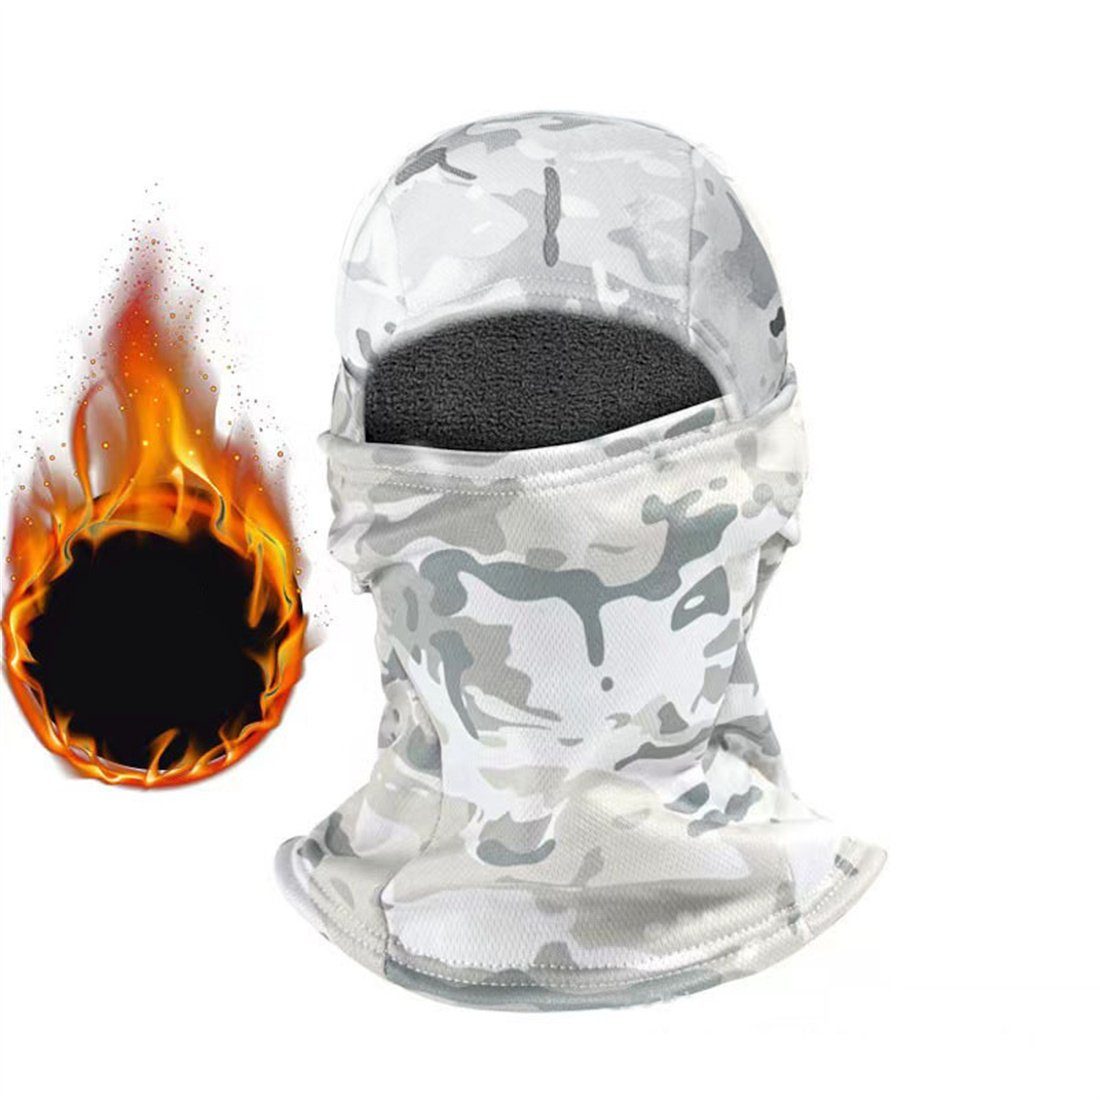 DÖRÖY Sturmhaube Winter-Ski-Maske, Outdoor-Sport Radfahren Kopfbedeckung, unisex Weiß